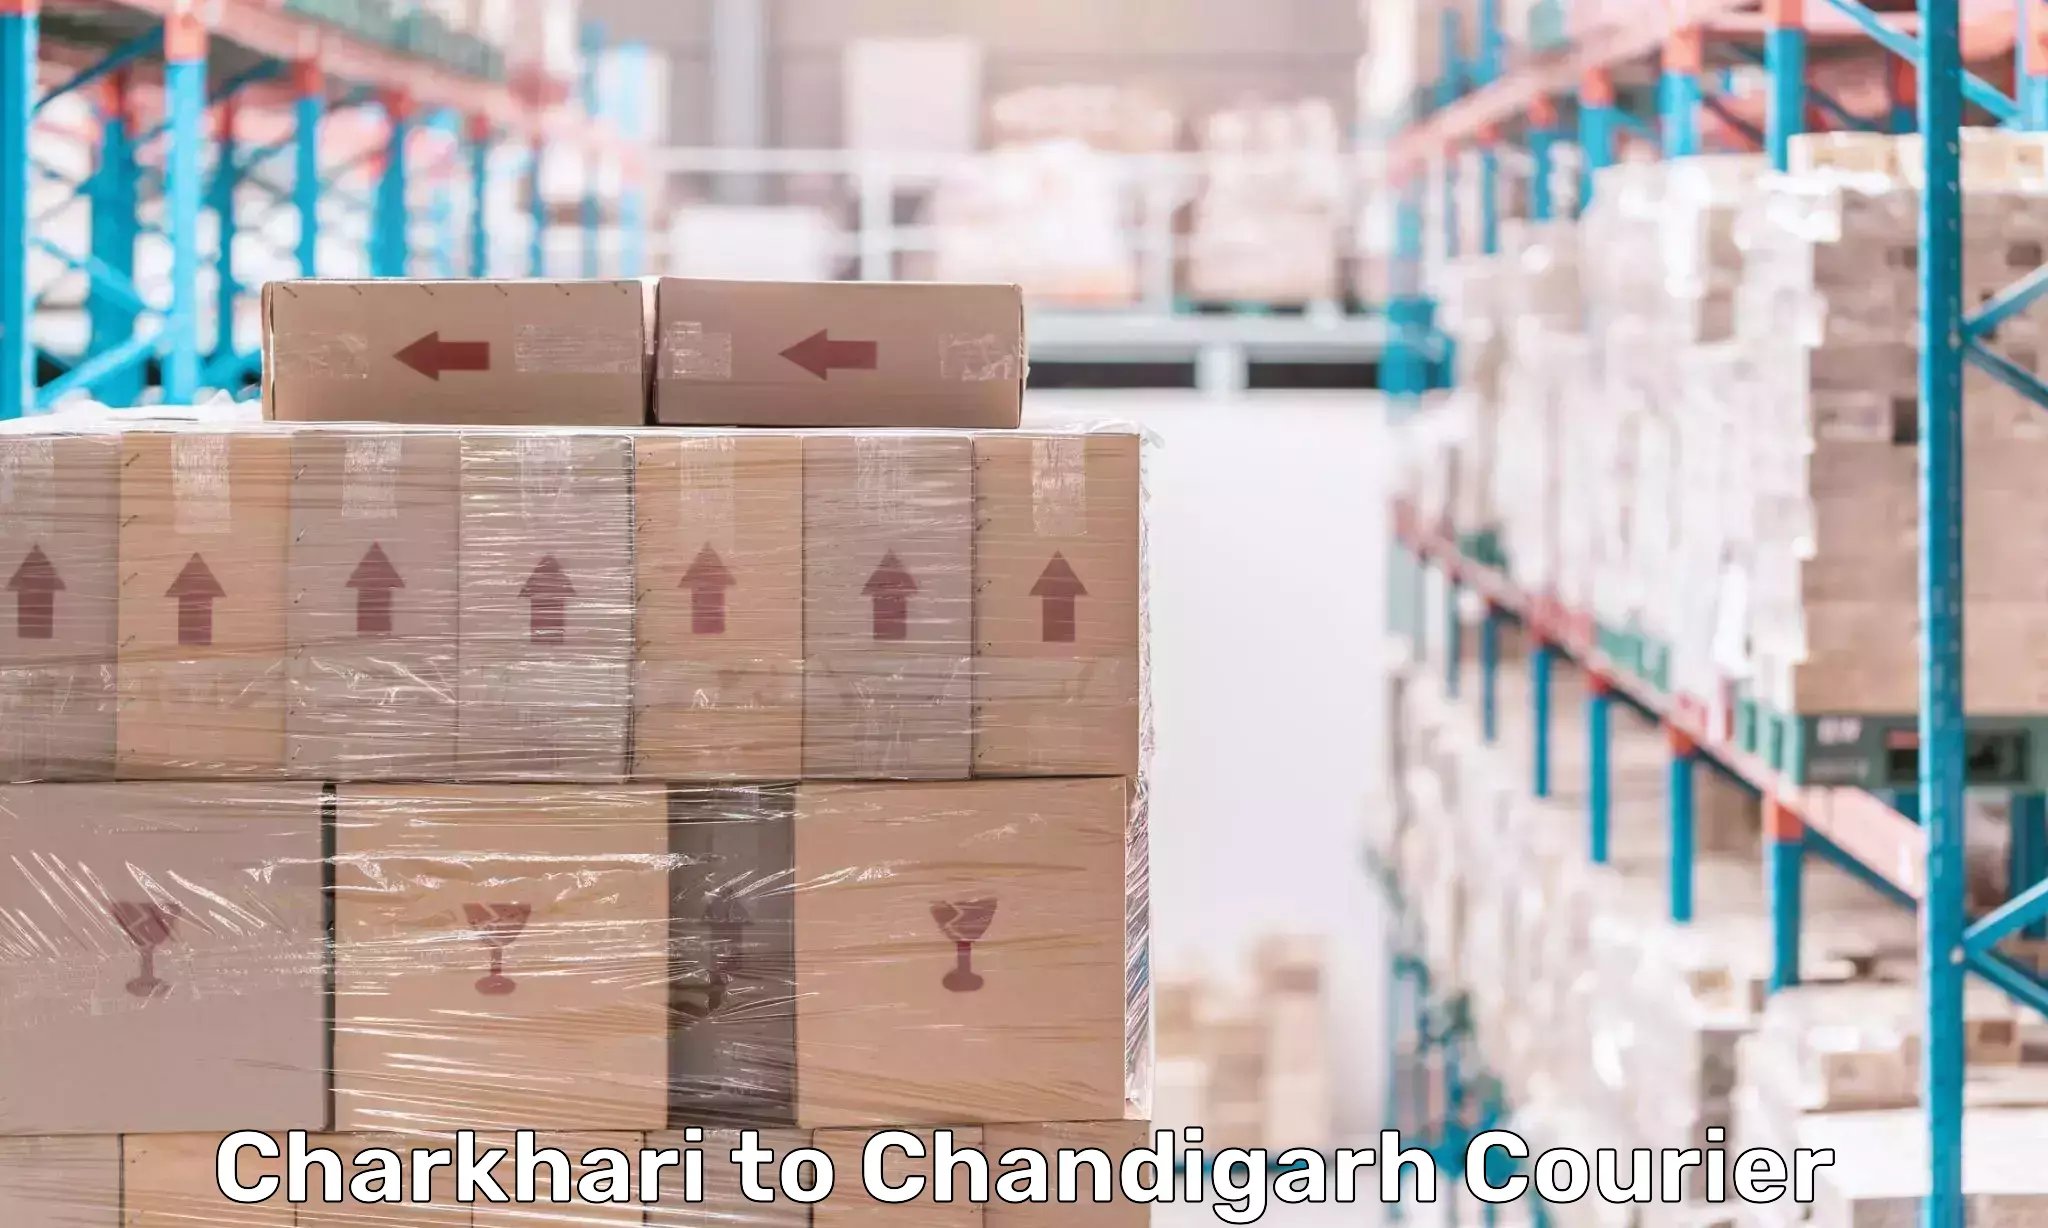 Urgent courier needs Charkhari to Chandigarh